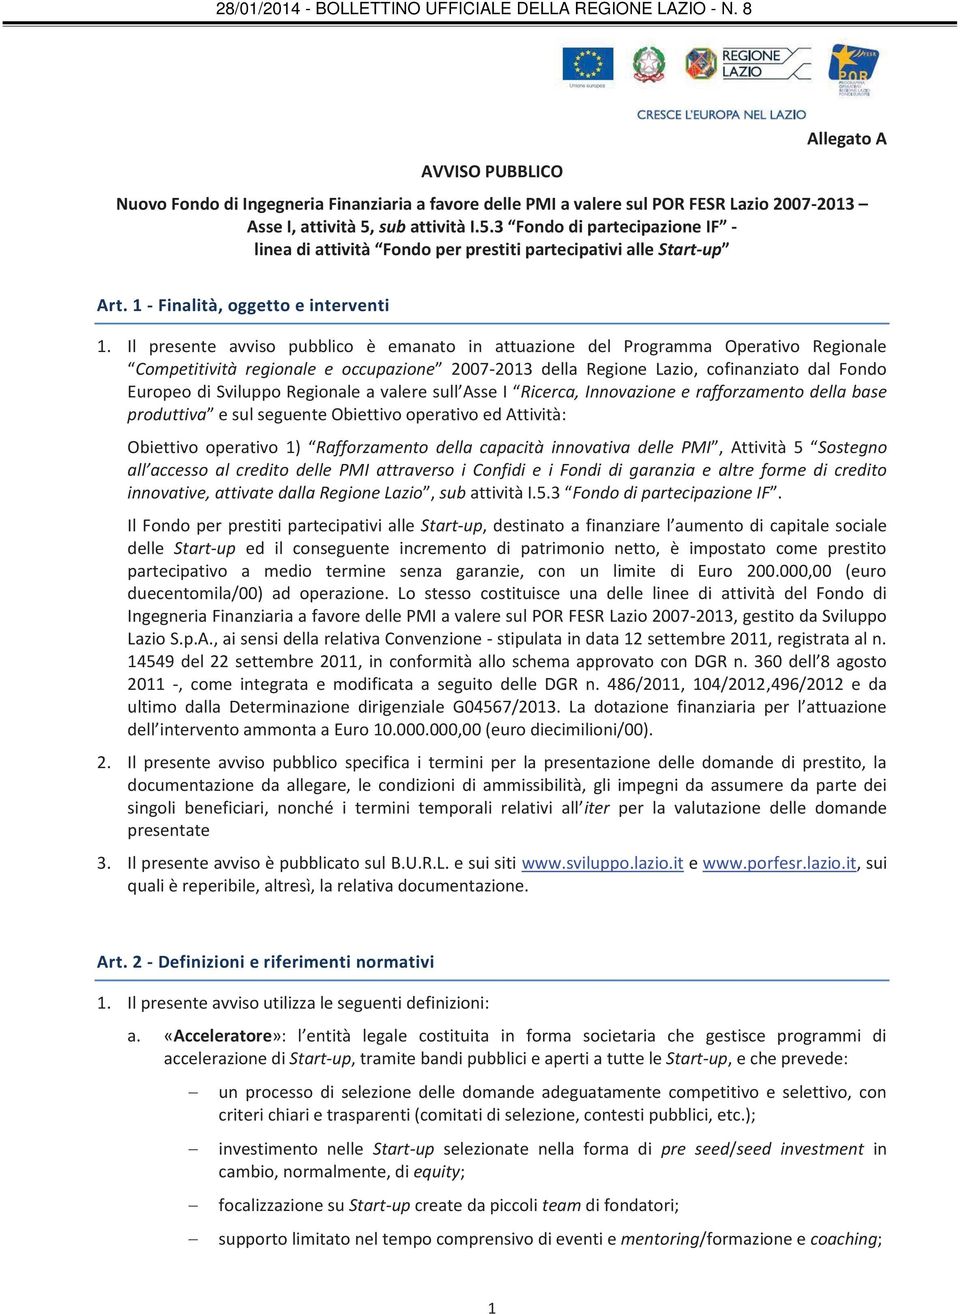 Il presente avviso pubblico è emanato in attuazione del Programma Operativo Regionale Competitività regionale e occupazione 2007-2013 della Regione Lazio, cofinanziato dal Fondo Europeo di Sviluppo